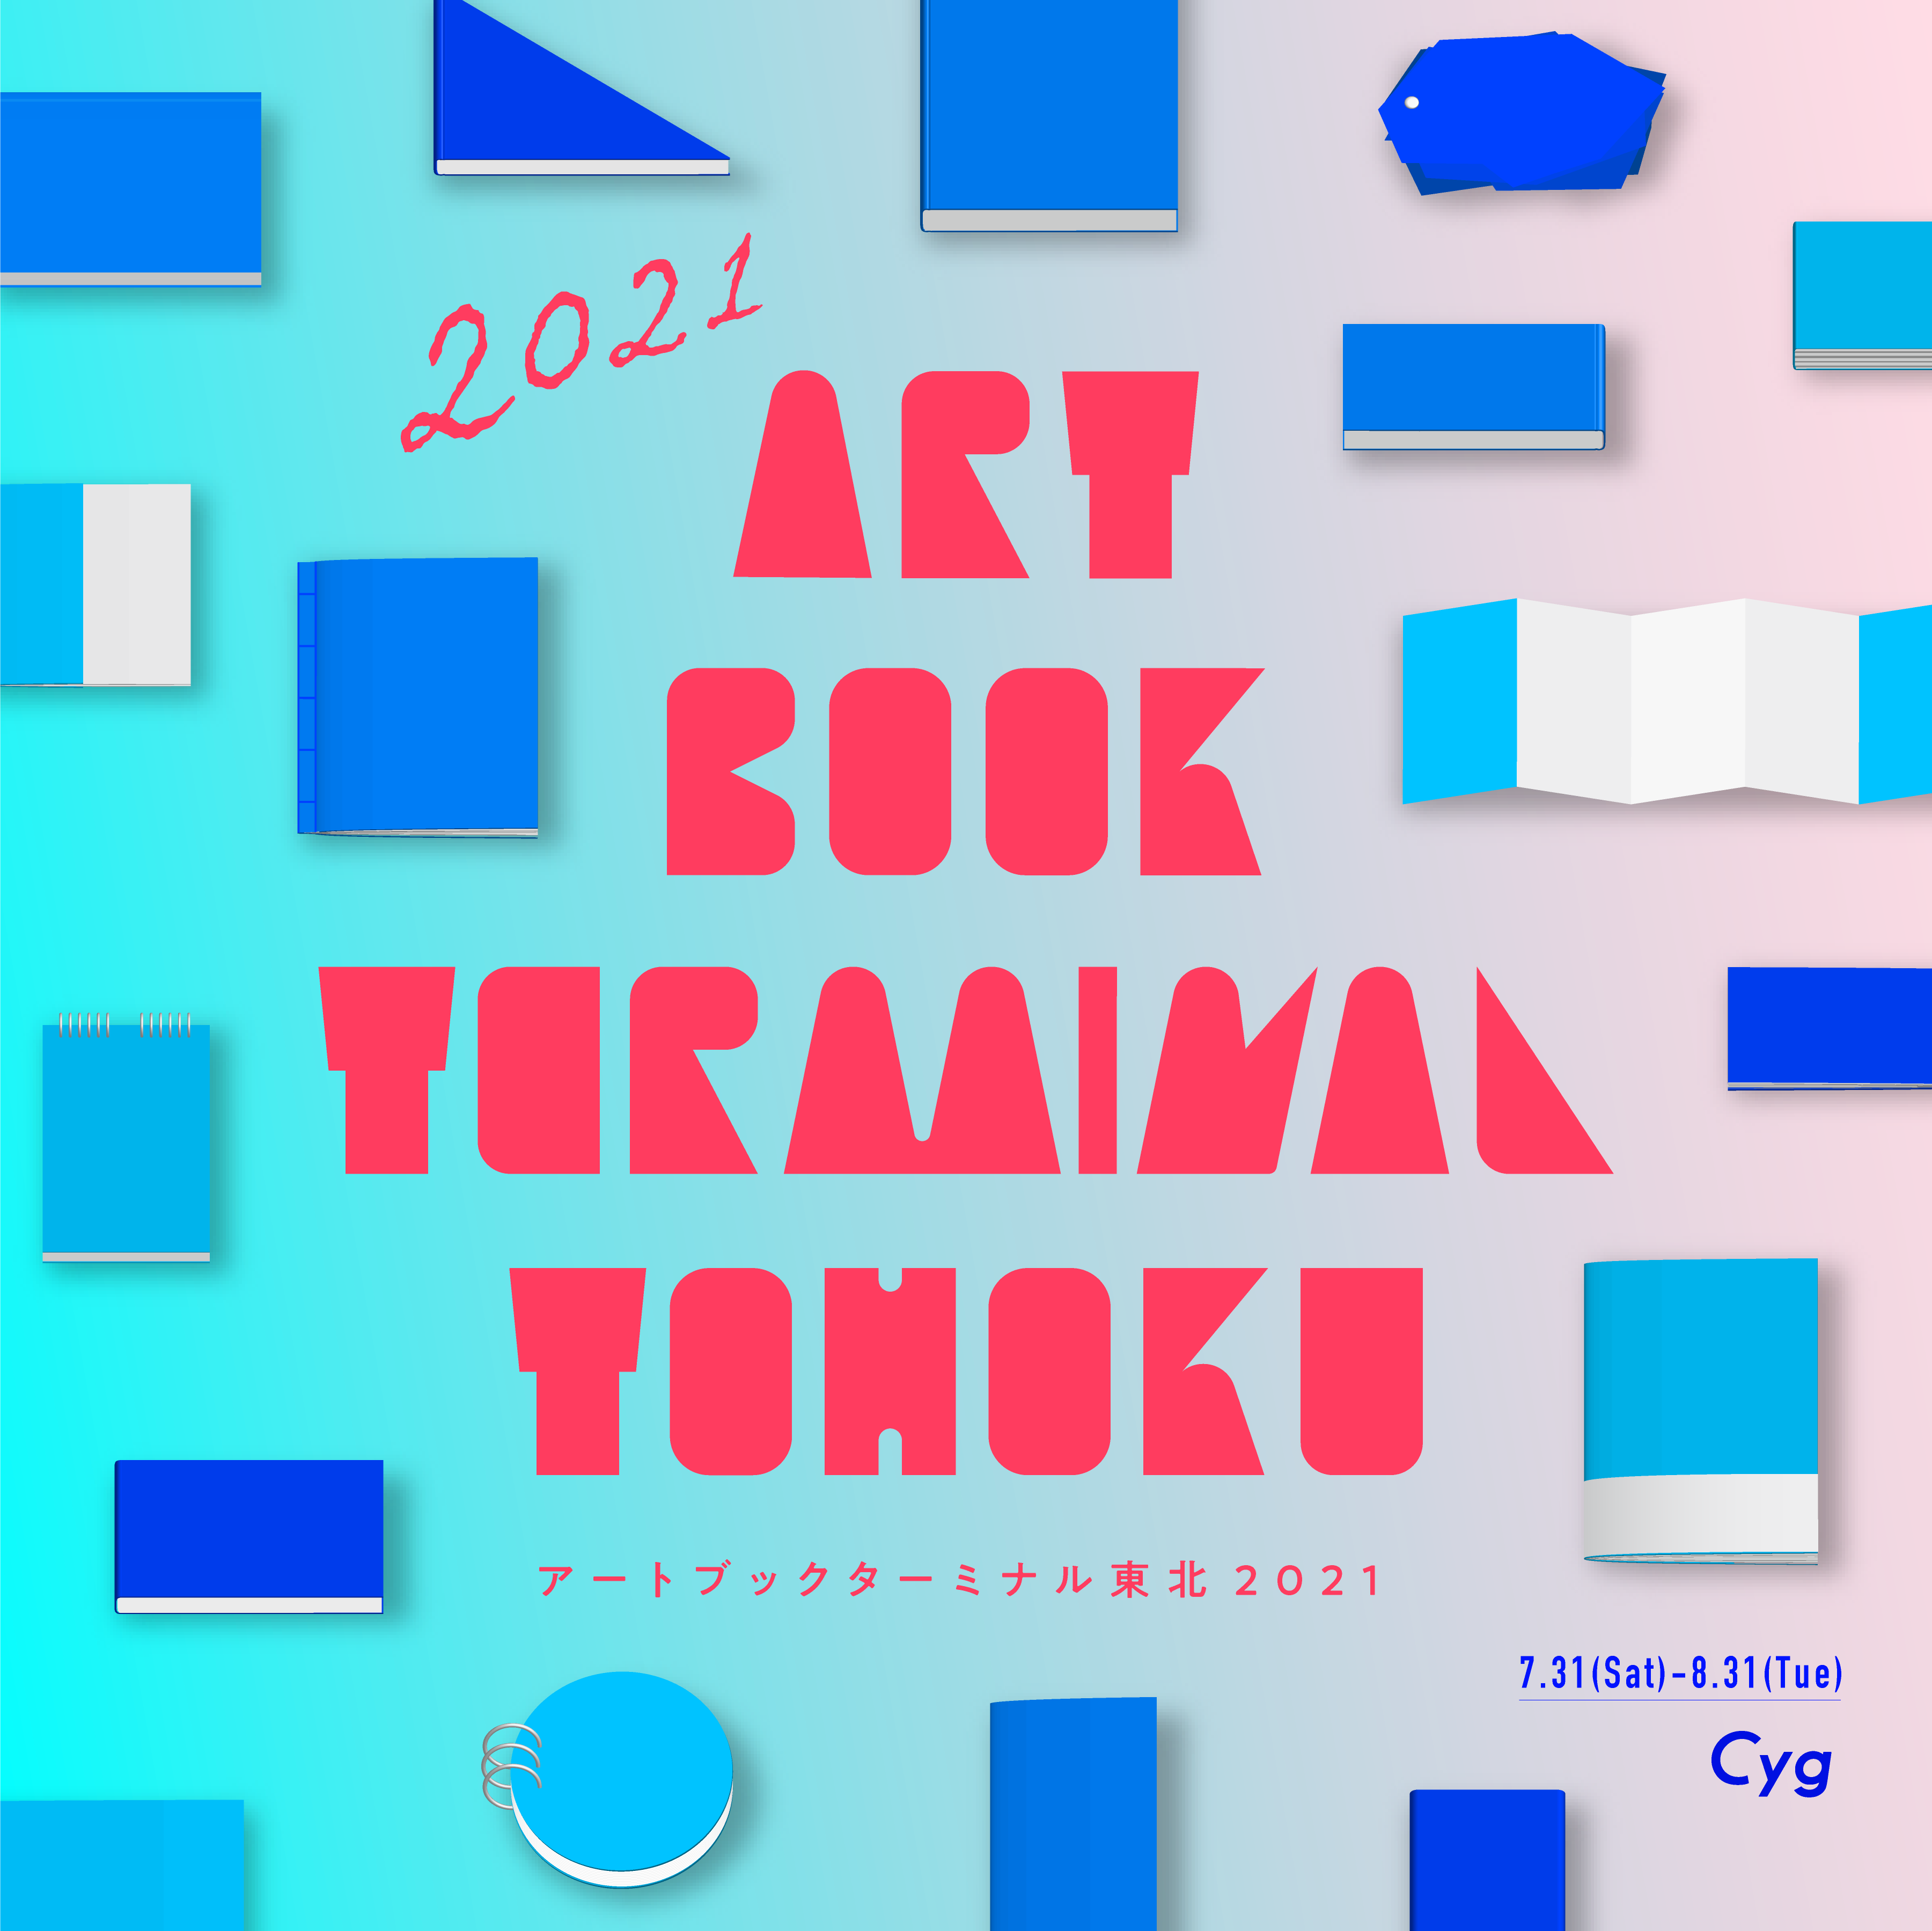 ART BOOK TERMINAL TOHOKU 2021